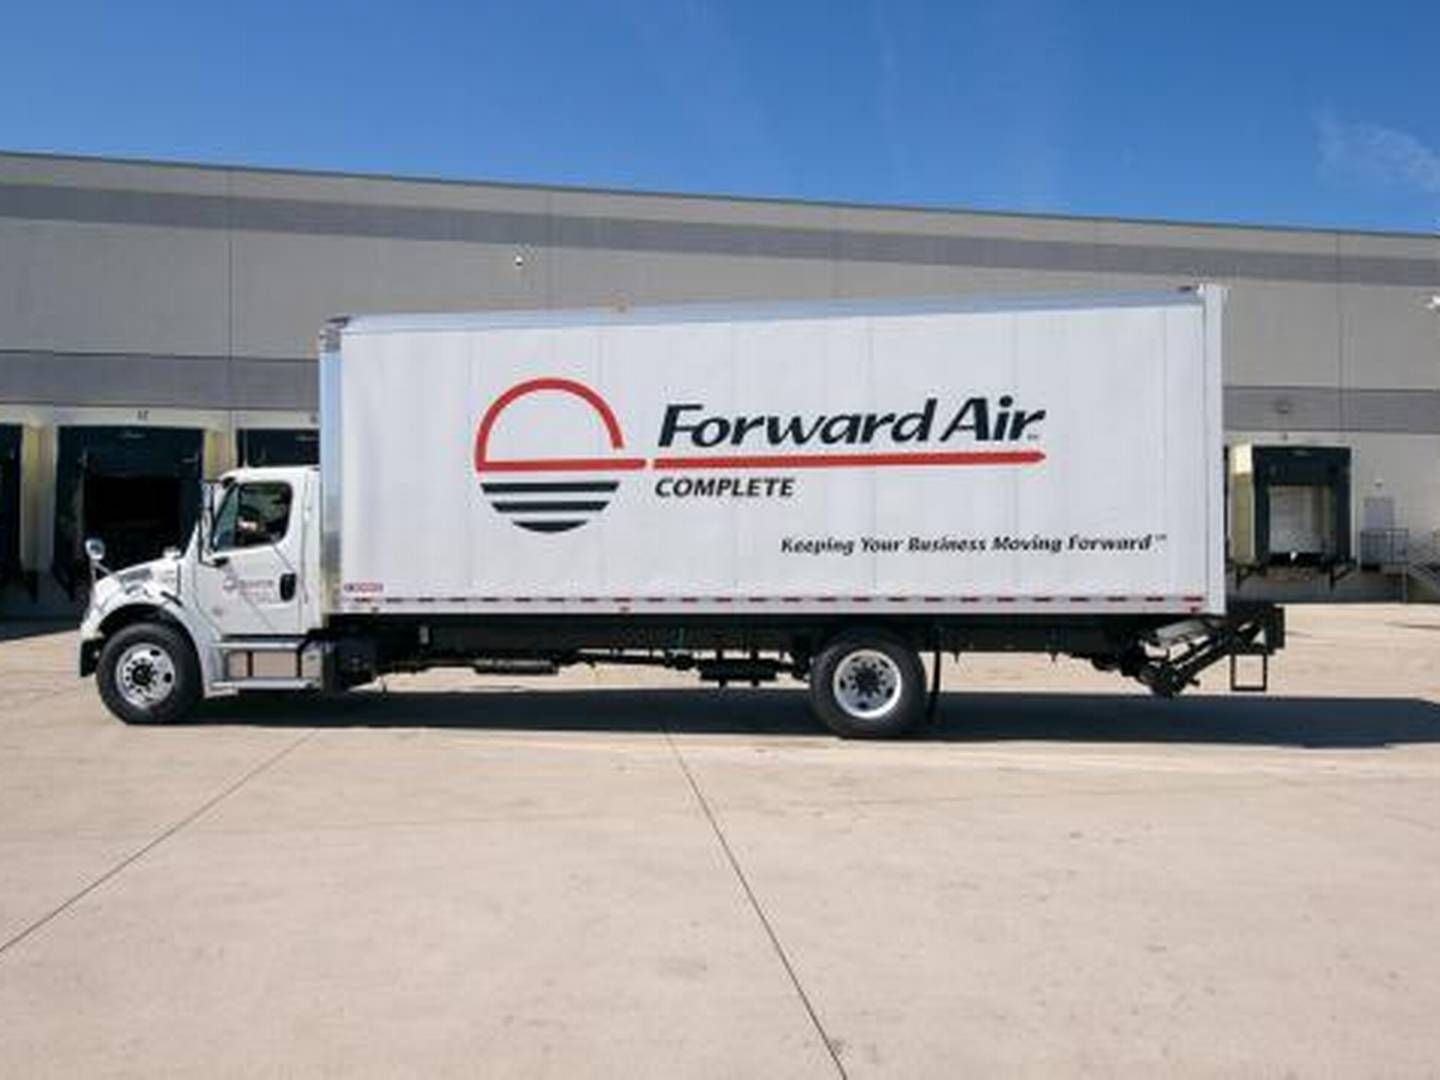 Ifølge en talsperson for Forward Air, vil der uundgåeligt ske nogle ændringer i det samlede selskab. | Foto: Forward Air/PR